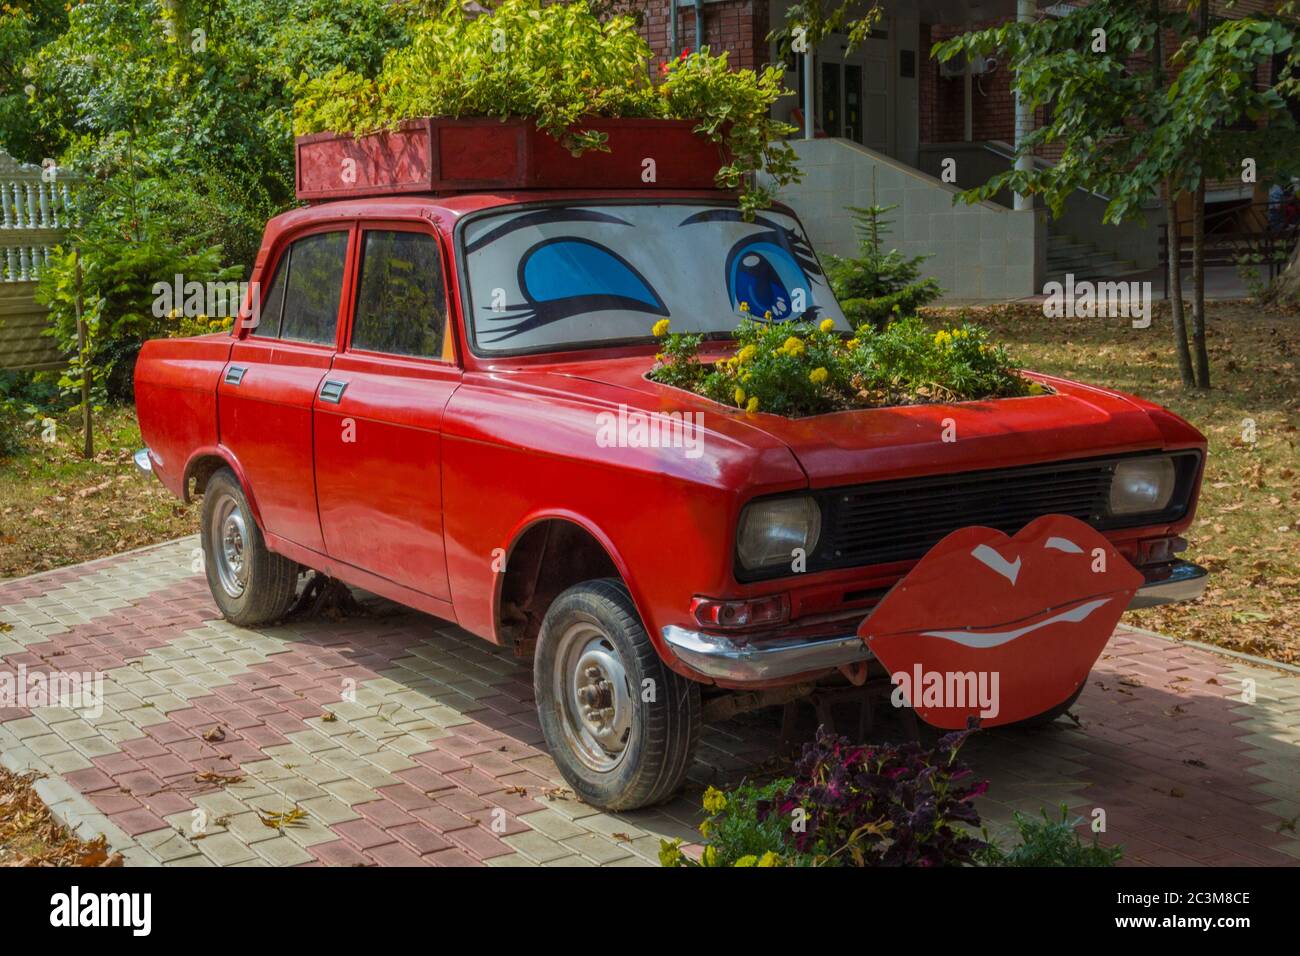 Gorjatschy Kljuch, Russland – 07. September 2015: Blumenbeet im roten Auto in Gorjatschy Kljuch, balneologischer Kurort in der Region Krasnodar, Russland Stockfoto